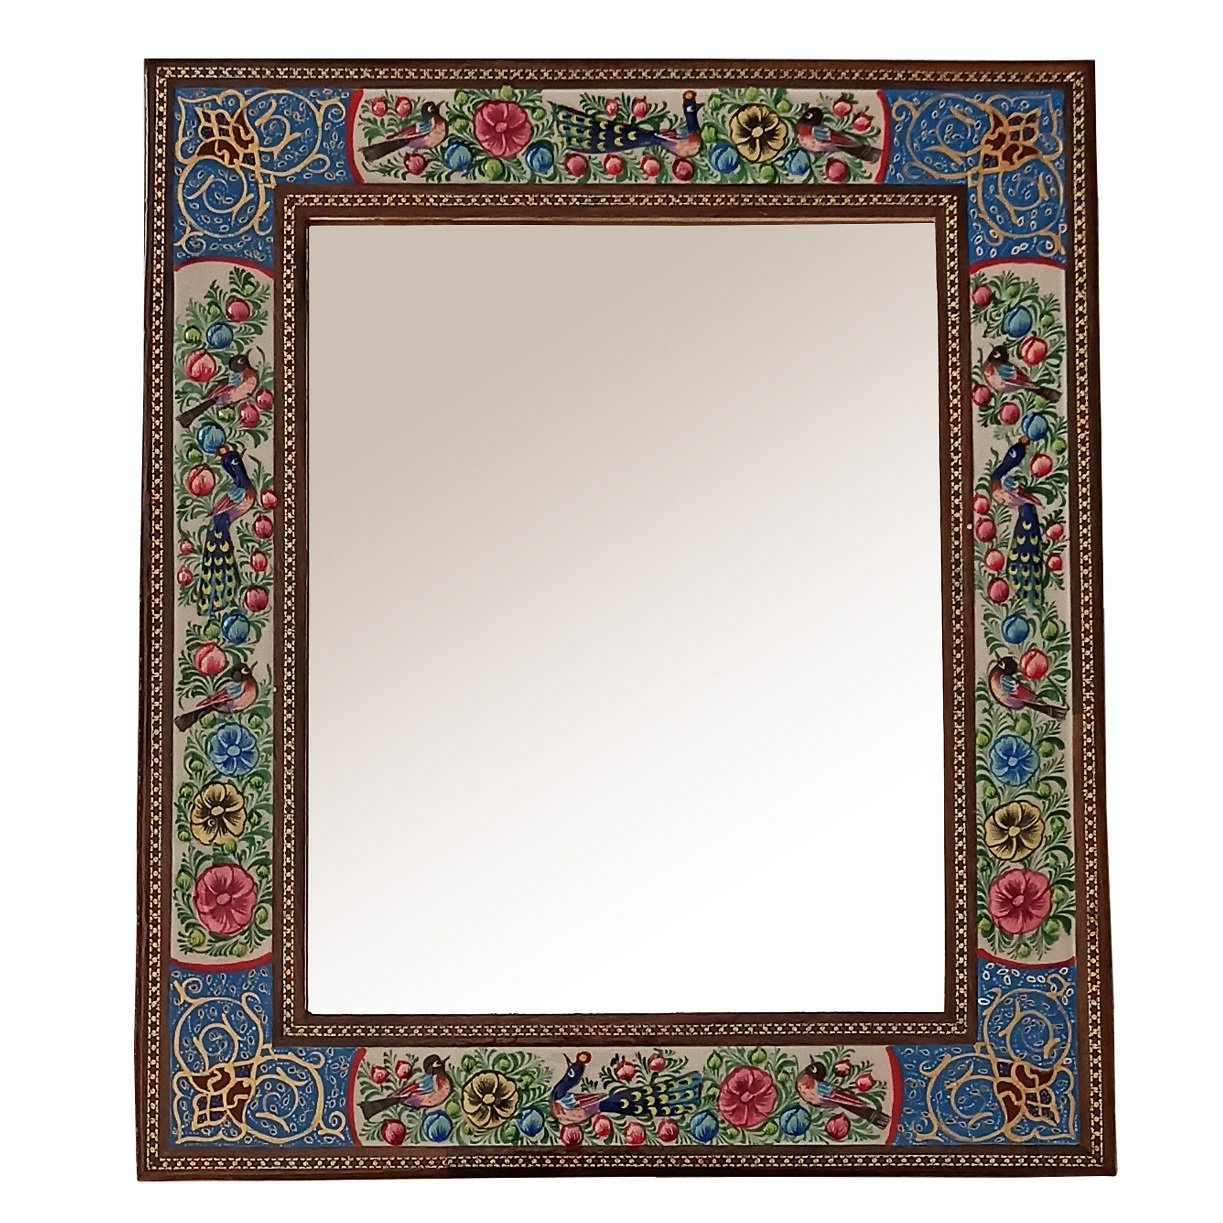 Khatam frame mirror Flower and chicken model code 2330 , Khatam Frame, Inlaid, Khatam Mirror Frame, Khatam